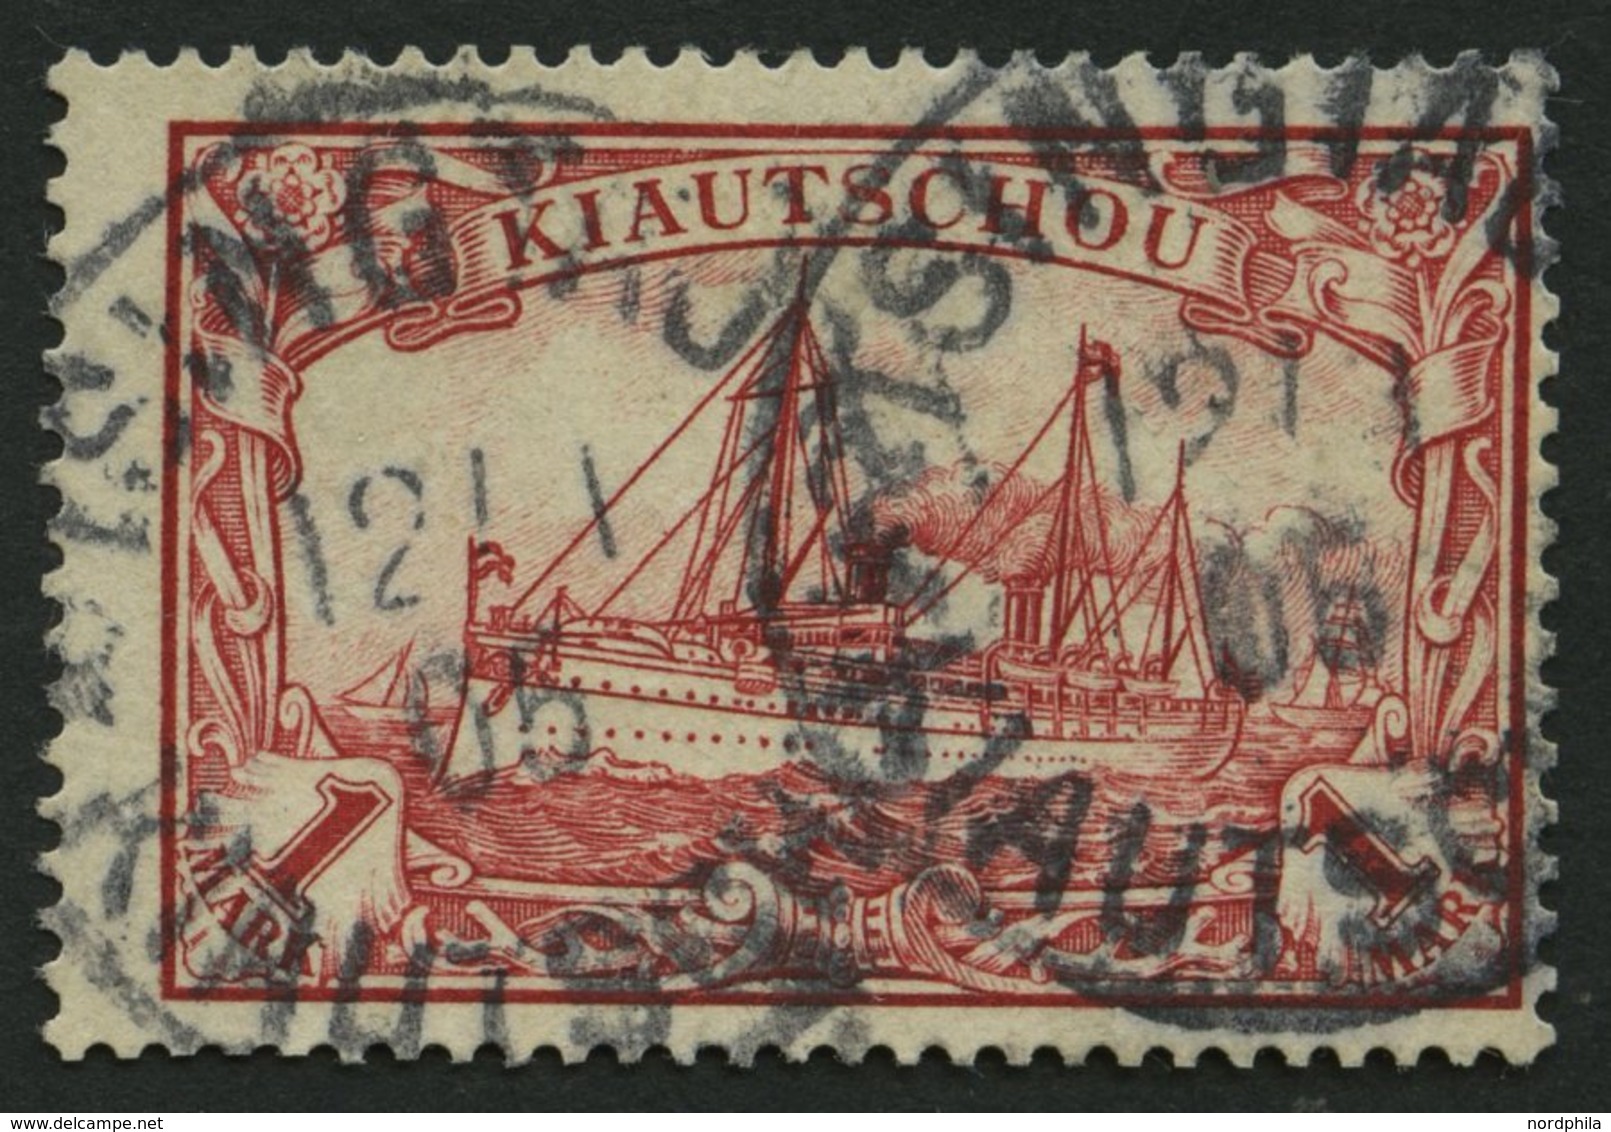 KIAUTSCHOU 14 O, 1901, 1 M. Rot, Etwas Dezentriert, Pracht, Mi. 110.- - Kiautschou